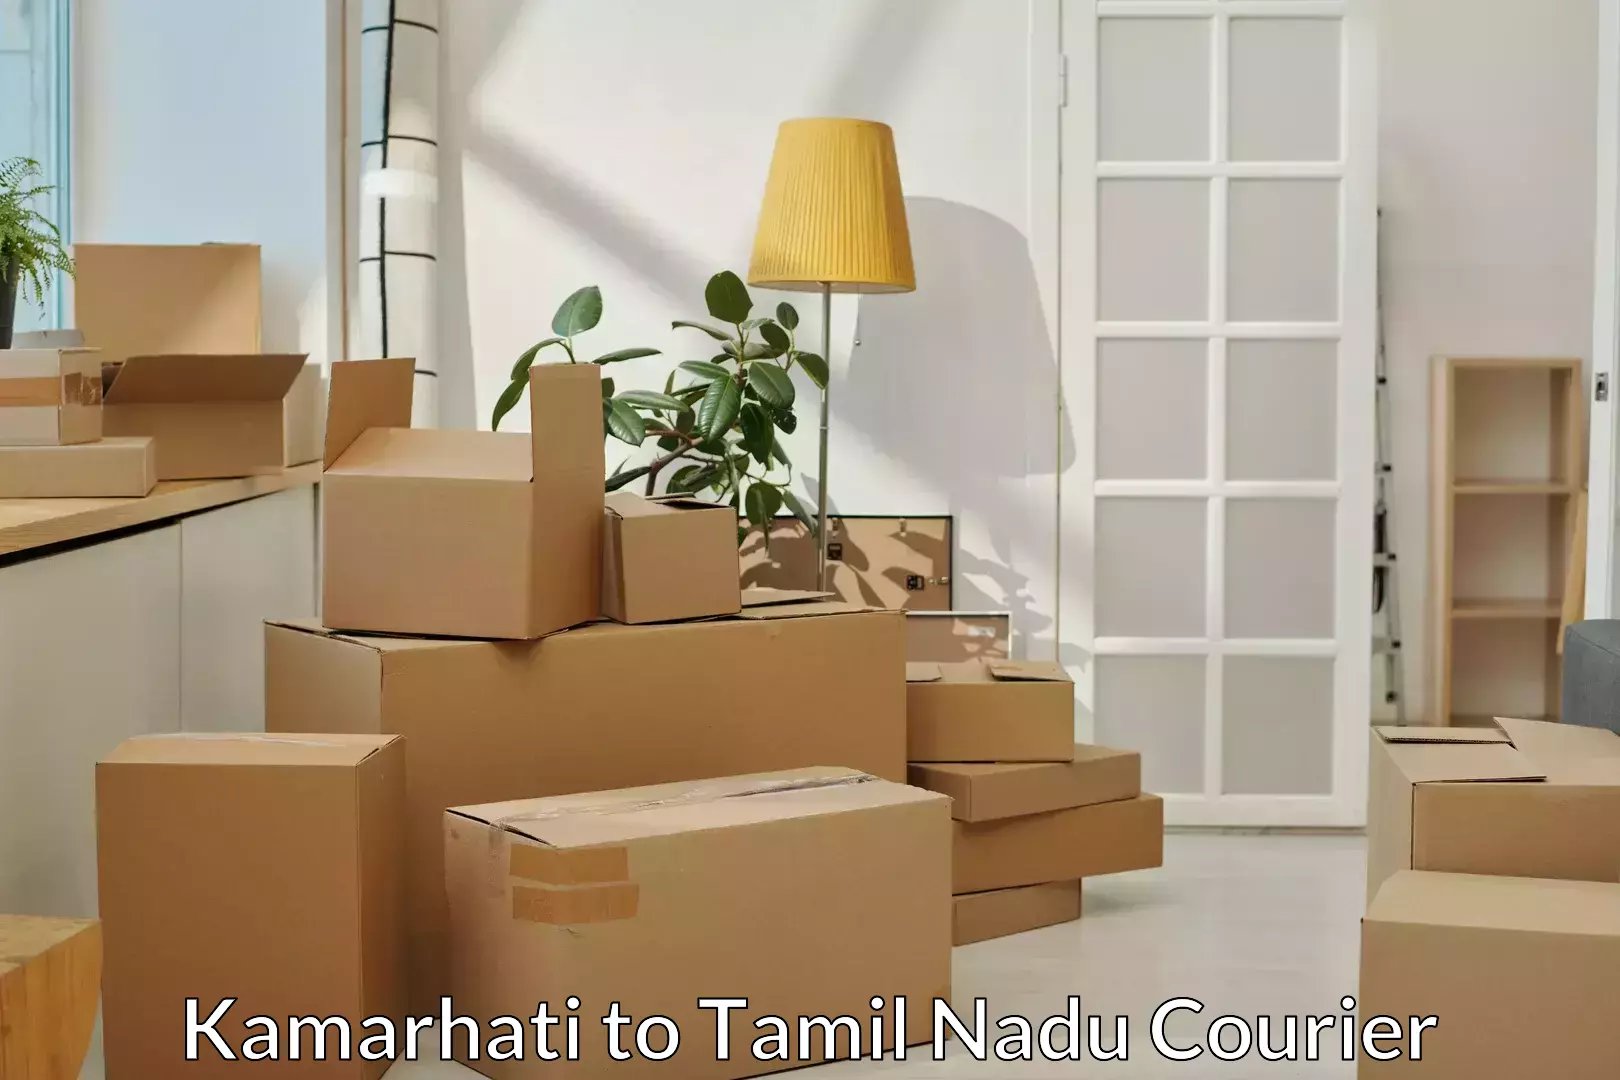 Professional movers and packers Kamarhati to Uthangarai